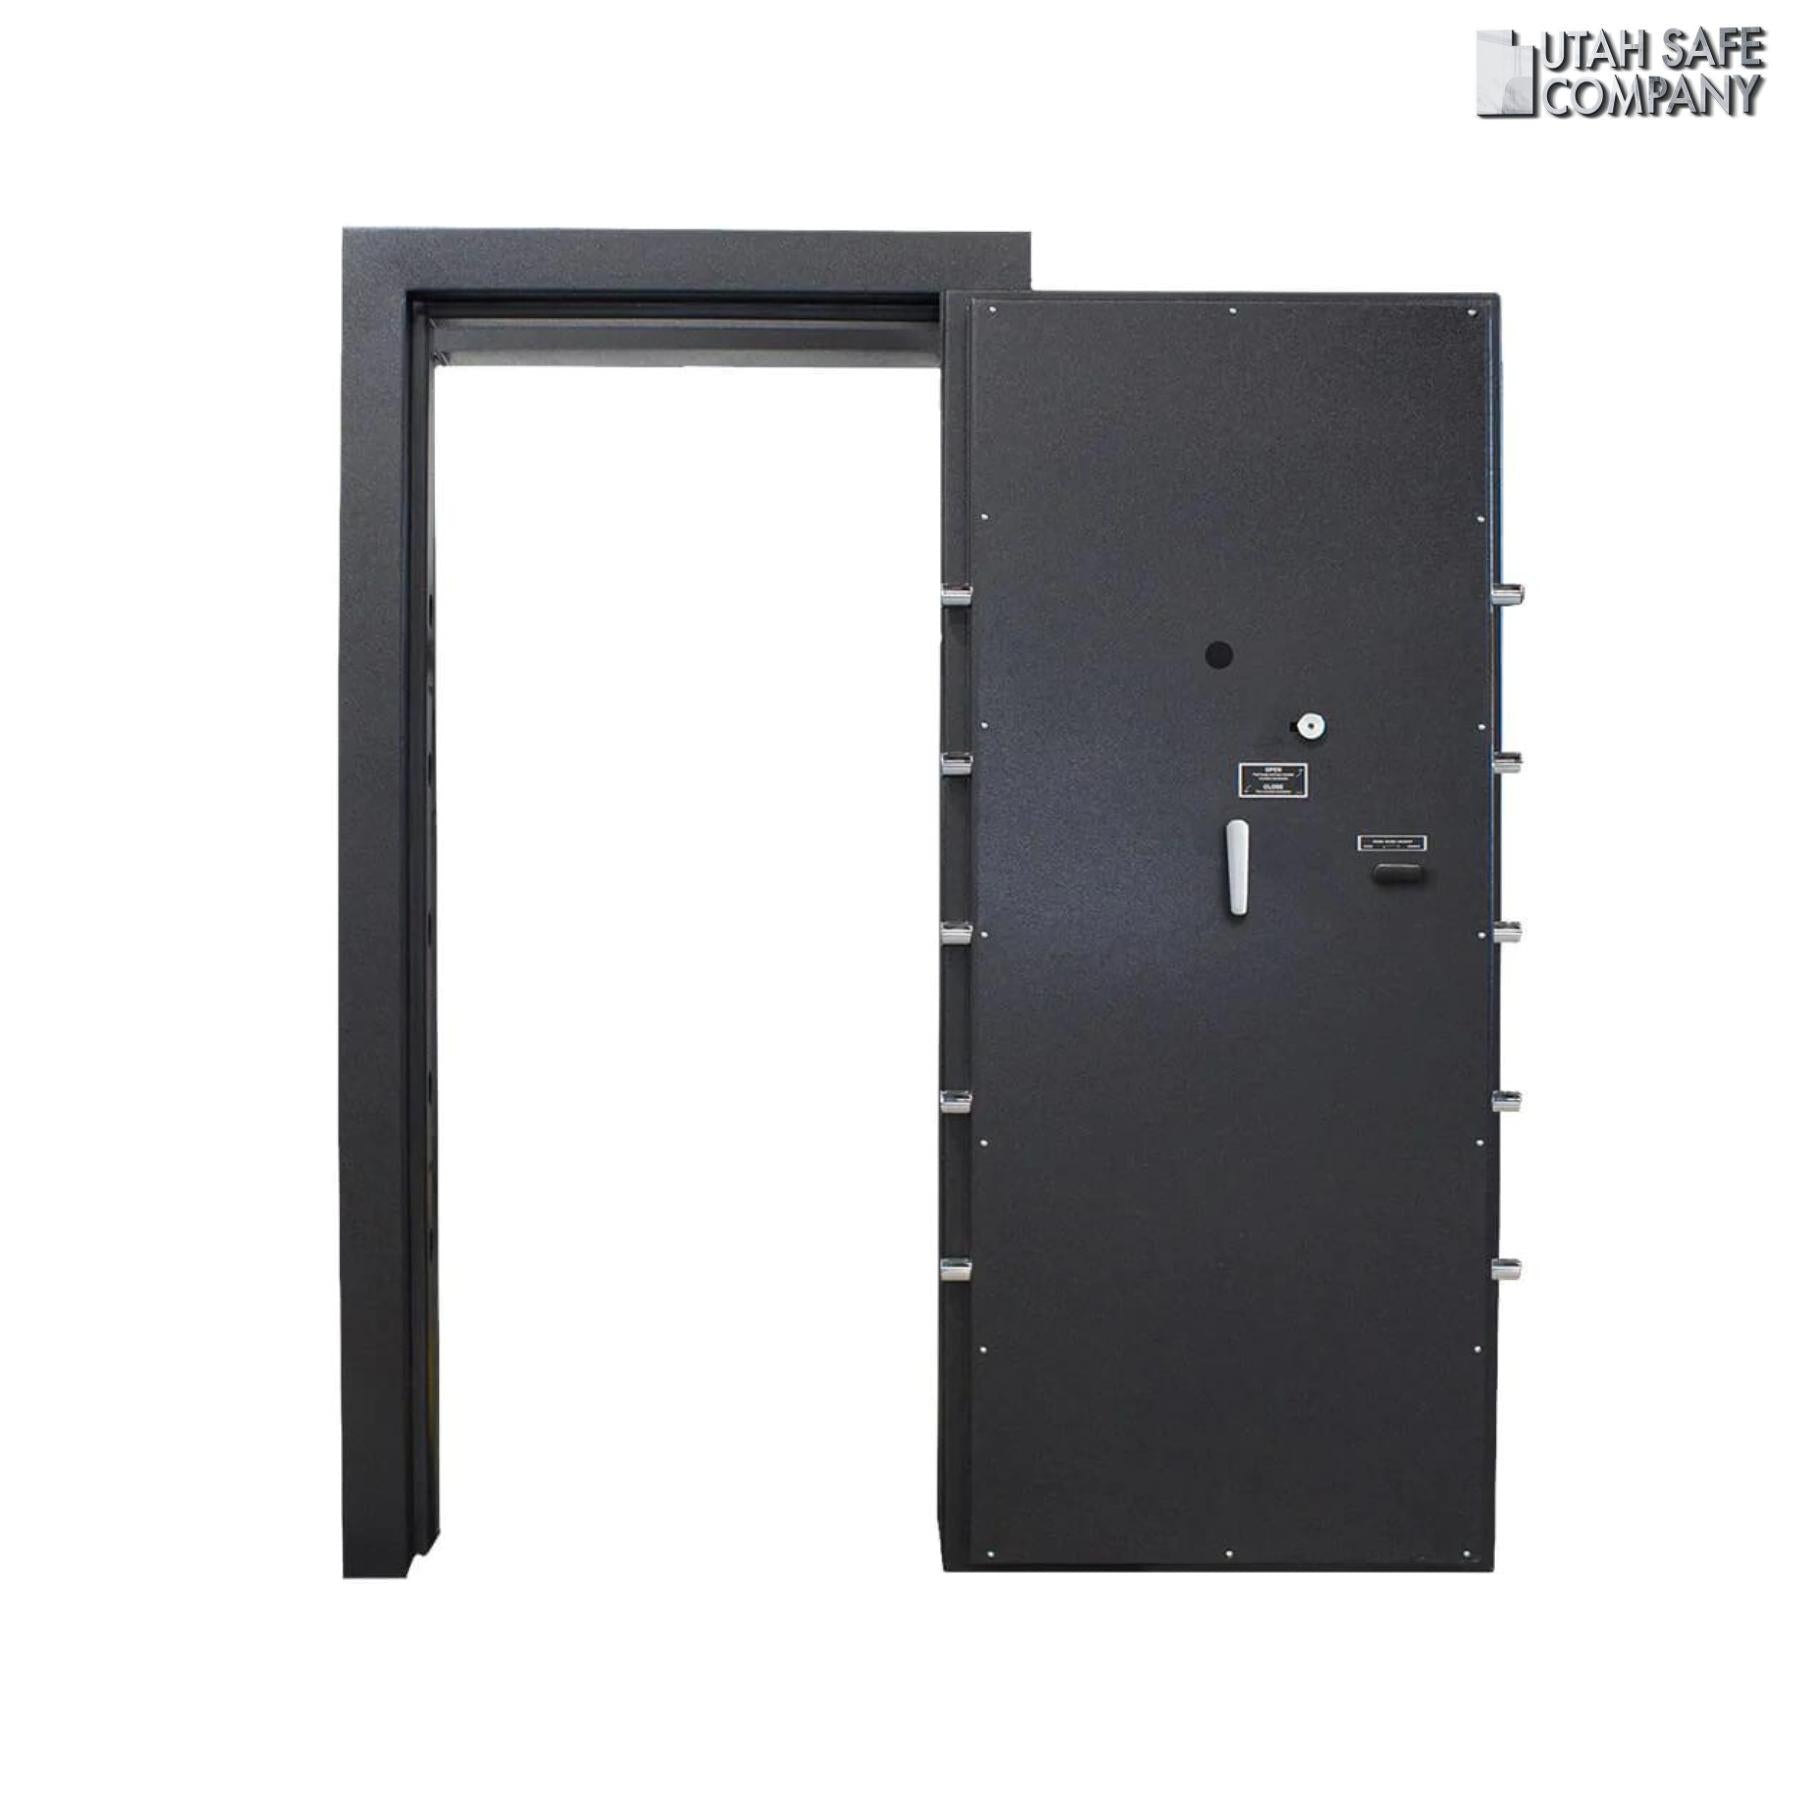 American Security VD8030BF Vault Door - Utah Safe Company